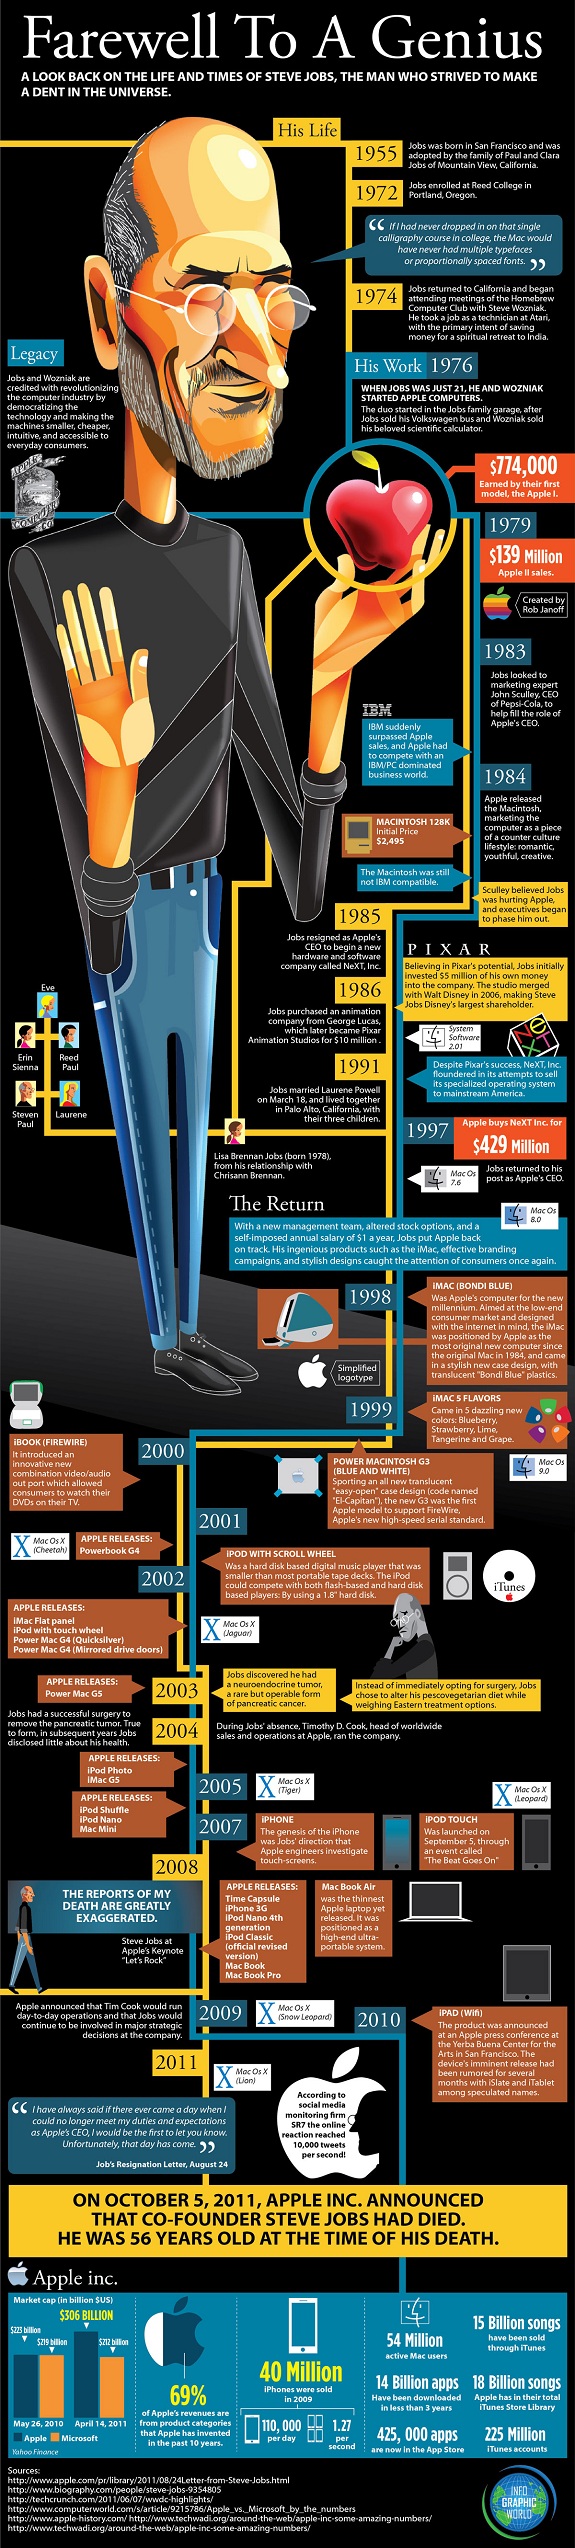 RGB.vn | Infographic Cuộc đời của Steve Jobs